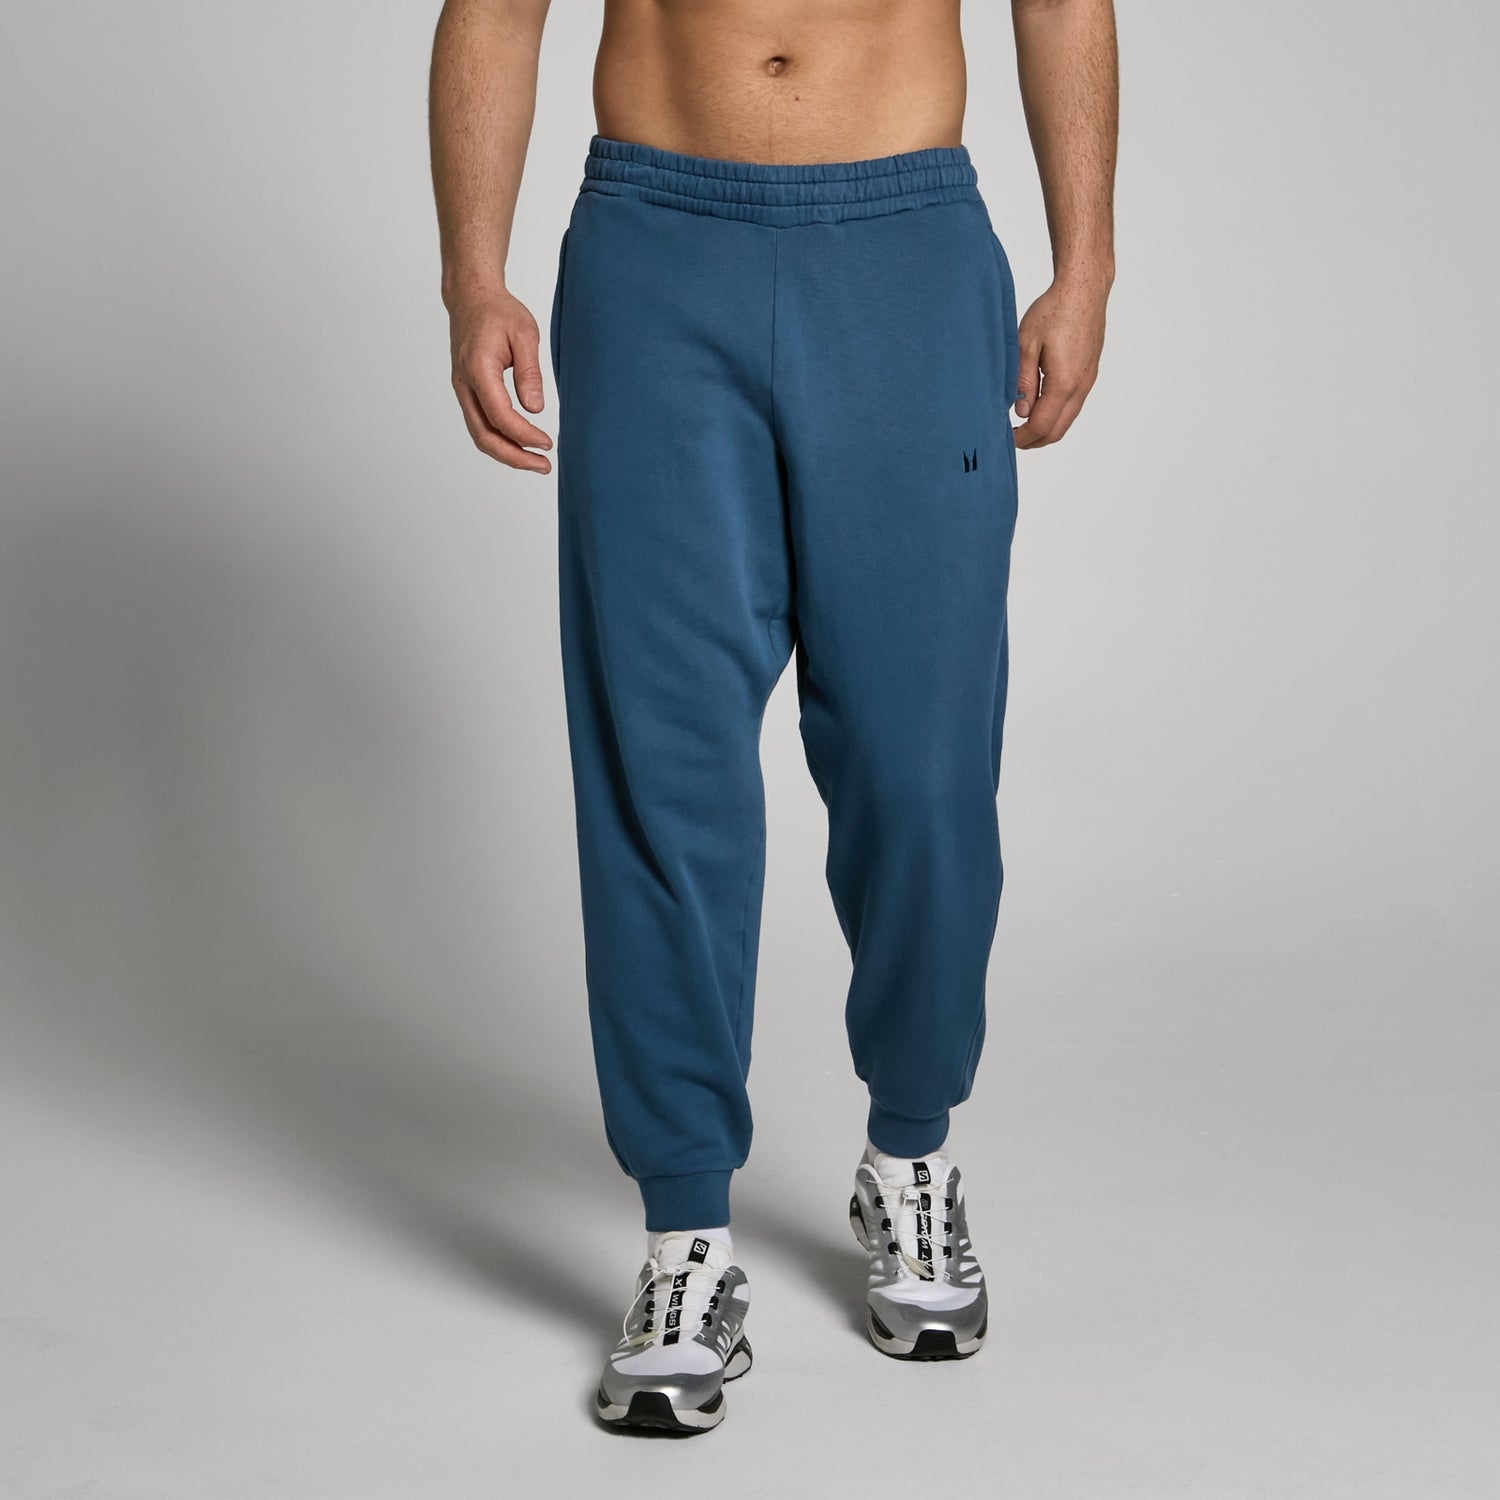 Pantalón deportivo de efecto lavado Tempo para hombre de MP - Azul marino lavado - XS